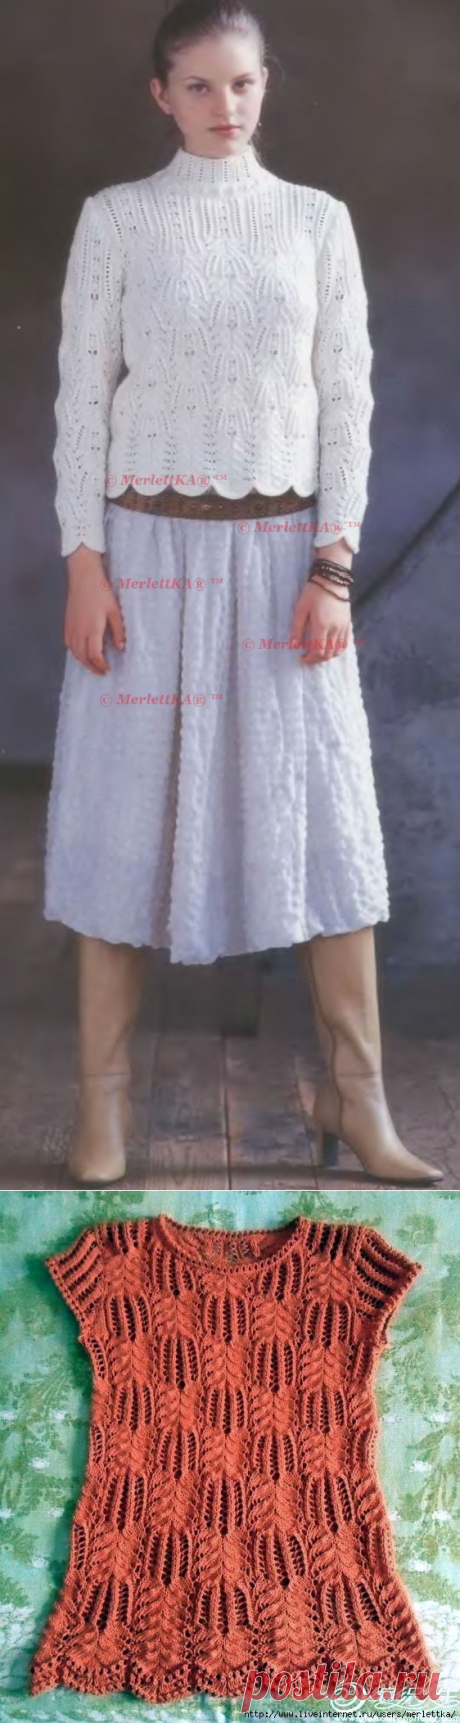 Блуза от Лидии Соселия на основе узоров Хитоми Шида - вязание спицами для подиума + 4 аналогичных узора и две модели